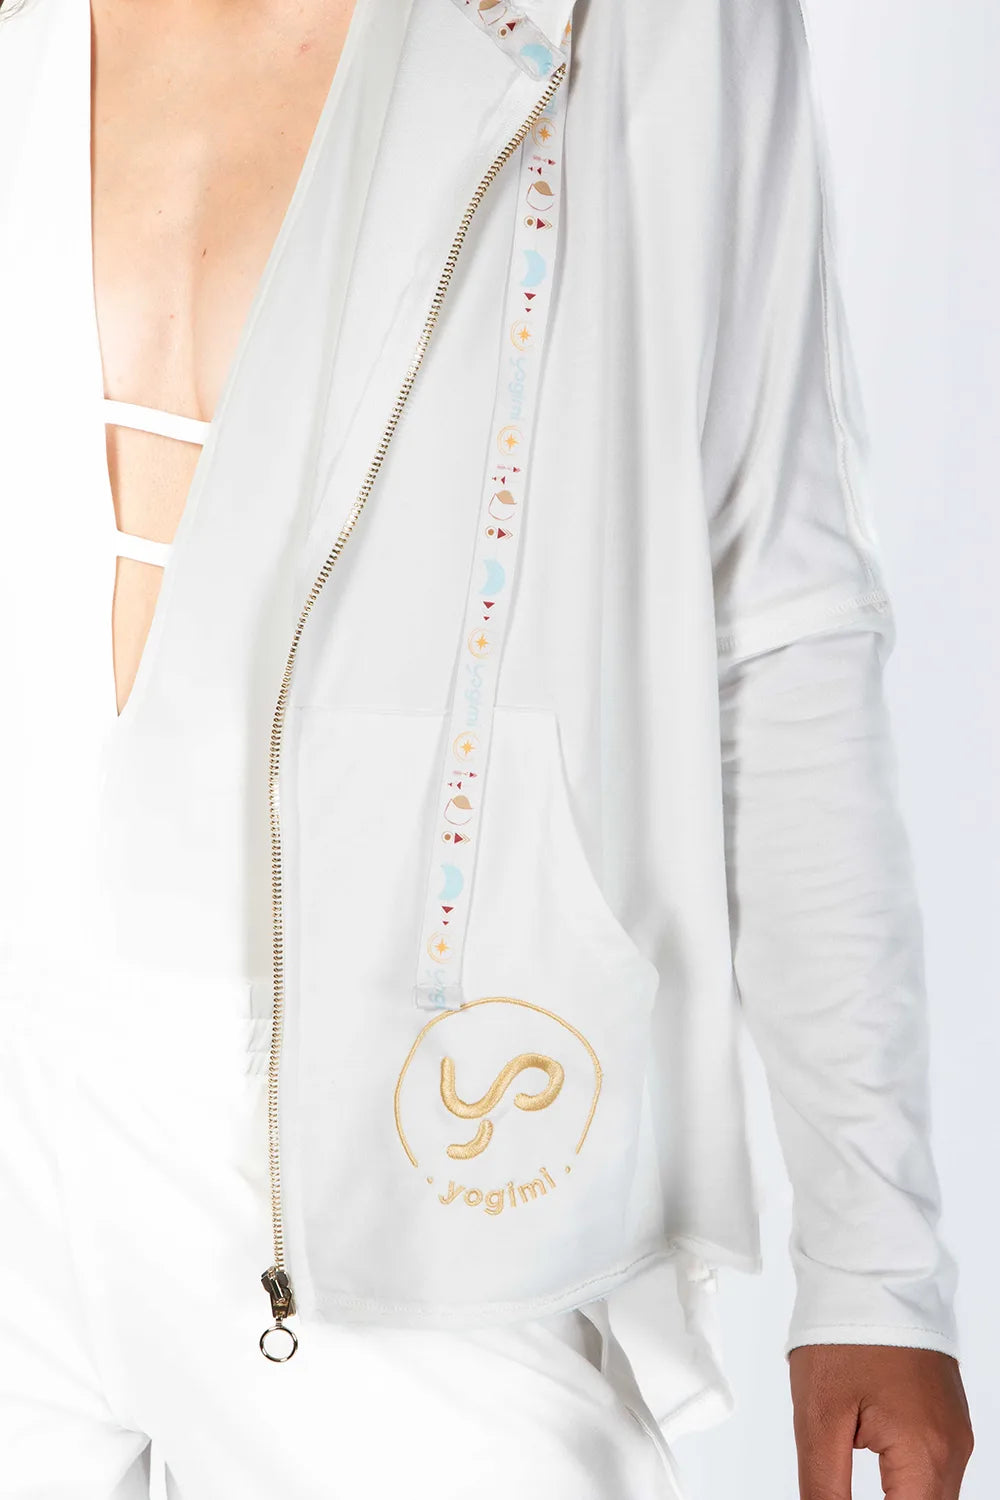 La sudadera del verano. Color blanco y bordados Yogimi con mantra Yo Soy Prioridad. Cinta de satén en gorro con diseño Yogimi. 